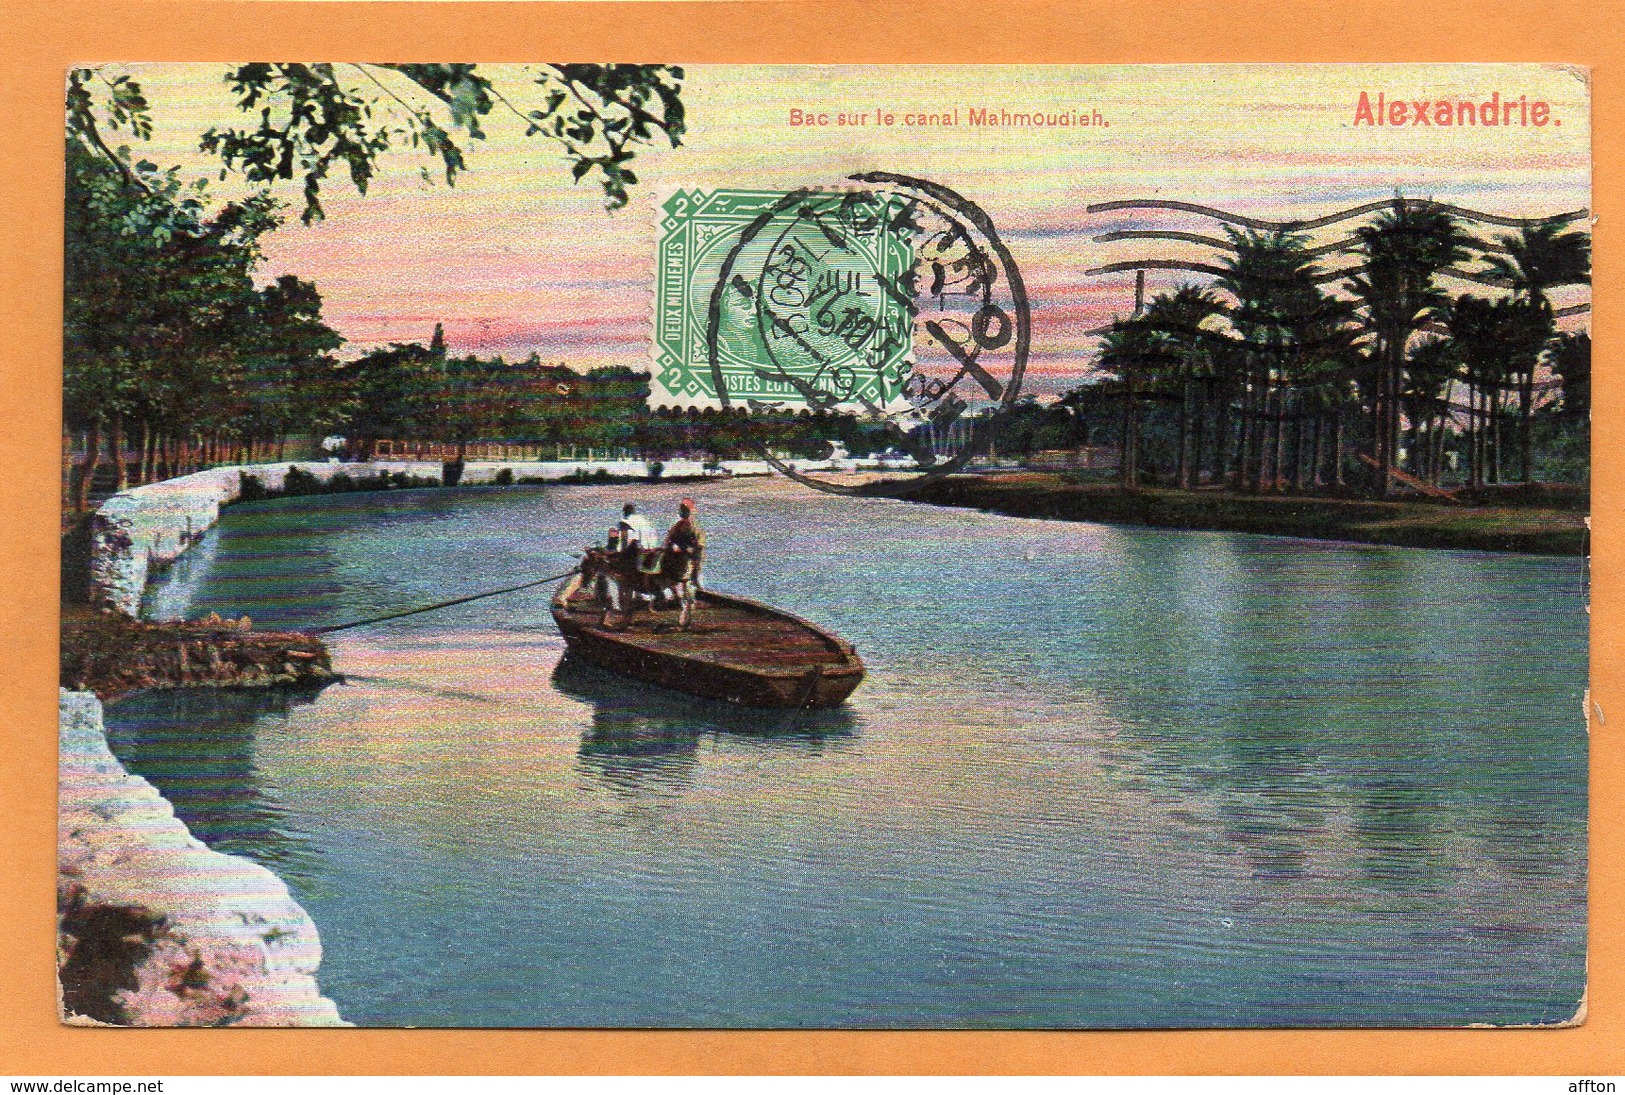 Alexandria Egypt 1910 Postcard Mailed - Alexandrie